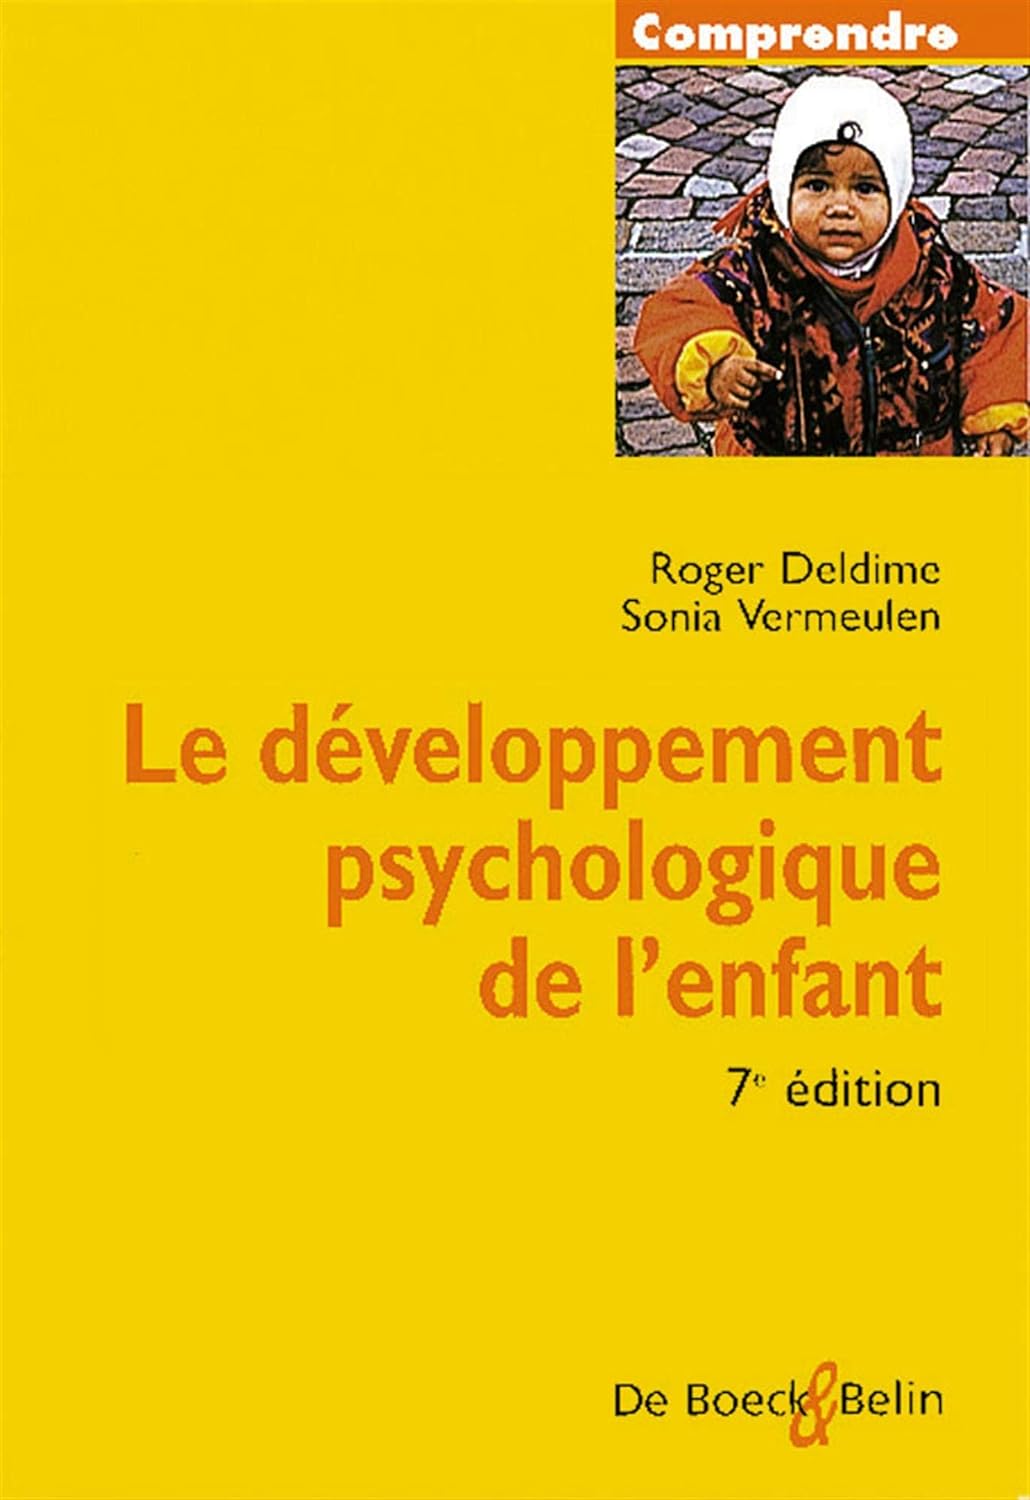 Comprendre : Le développement psychologique de l'enfant (7e éd.) - Roger Deldime